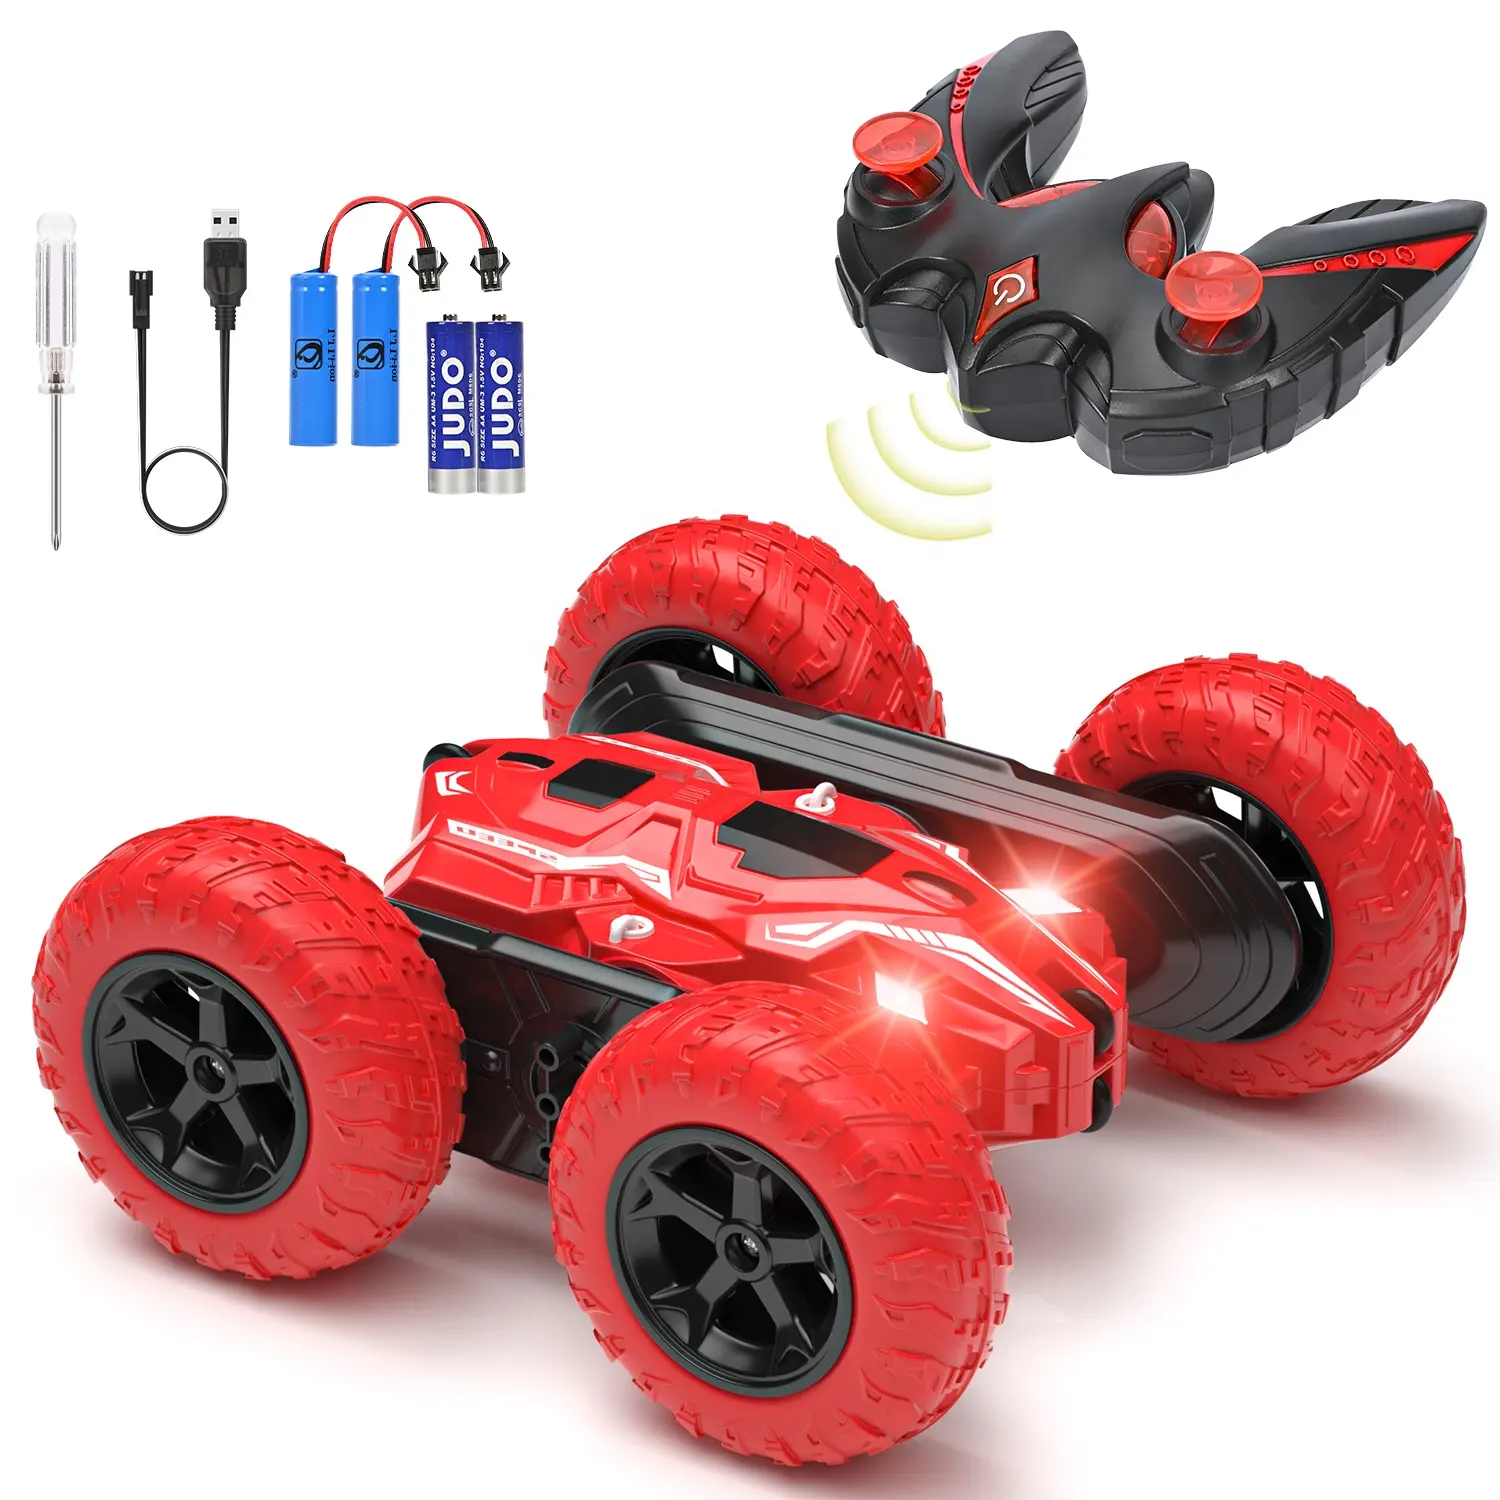 Uzaktan kumanda araba RC araç oyuncak yüksek hızlı RC arabalar çift taraflı Mini RC dublör araba çocuklar için LED ışıkları ile